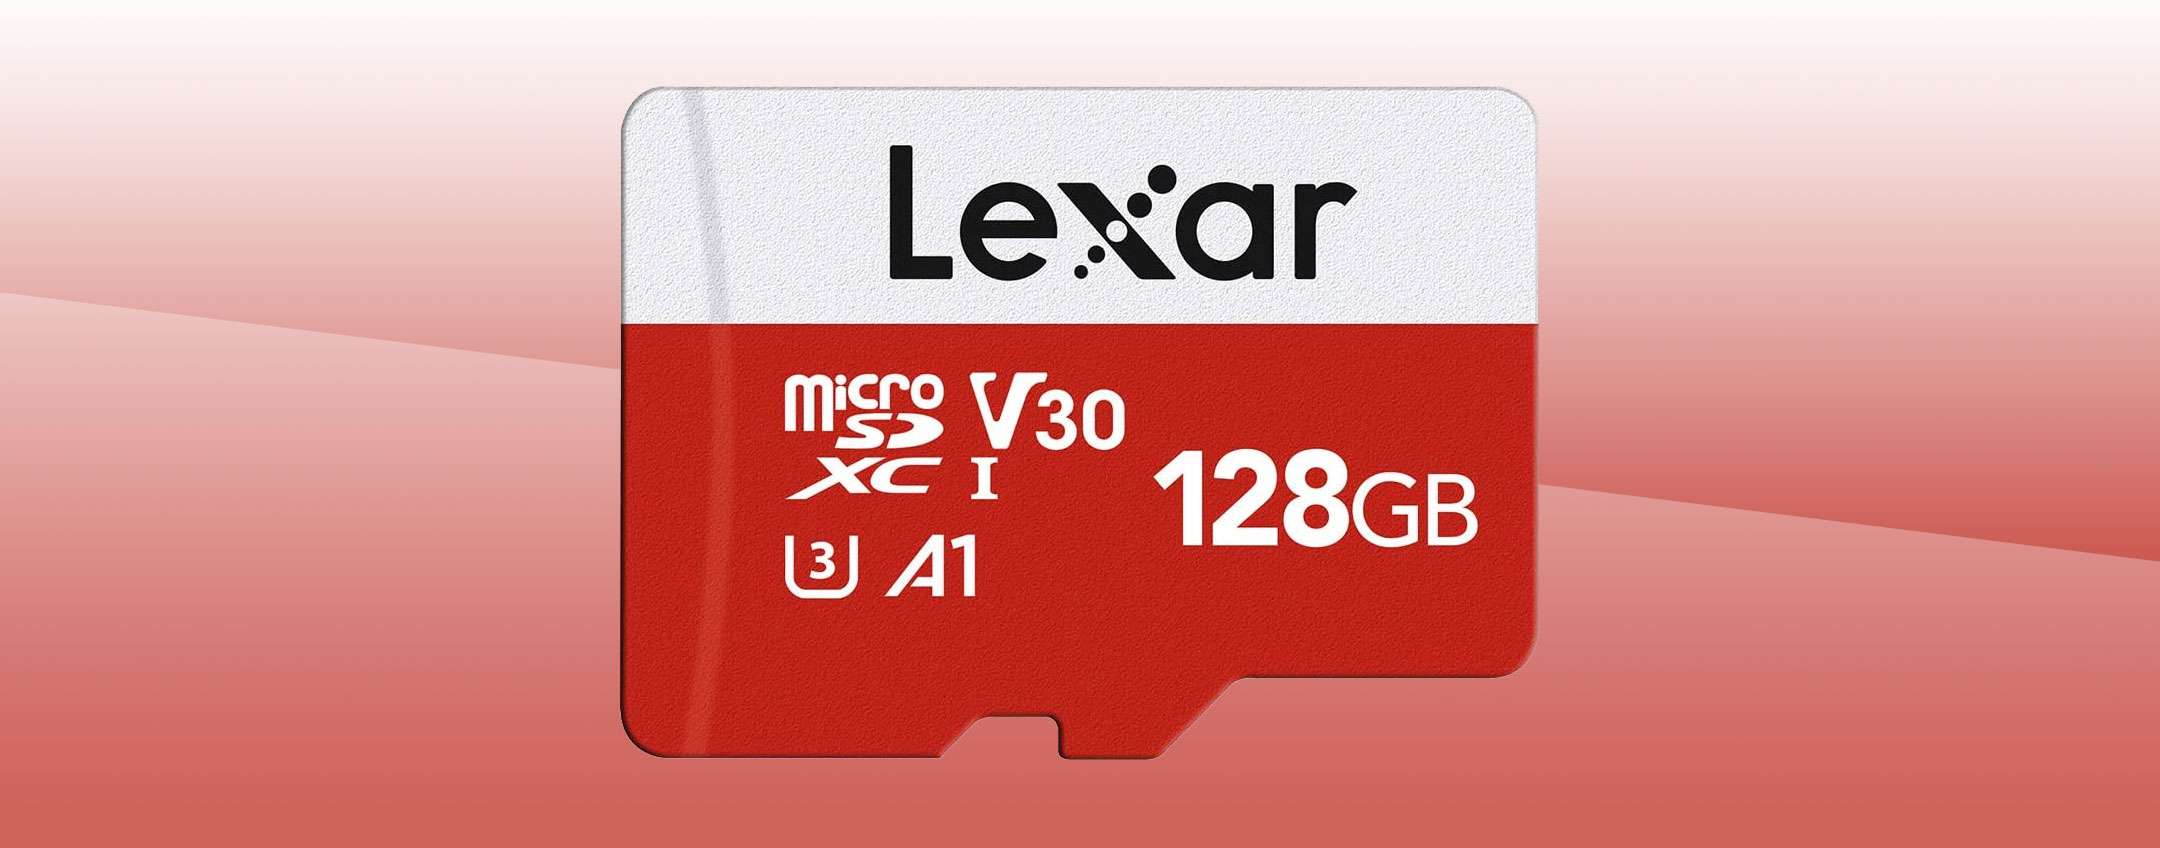 Lexar, microSD